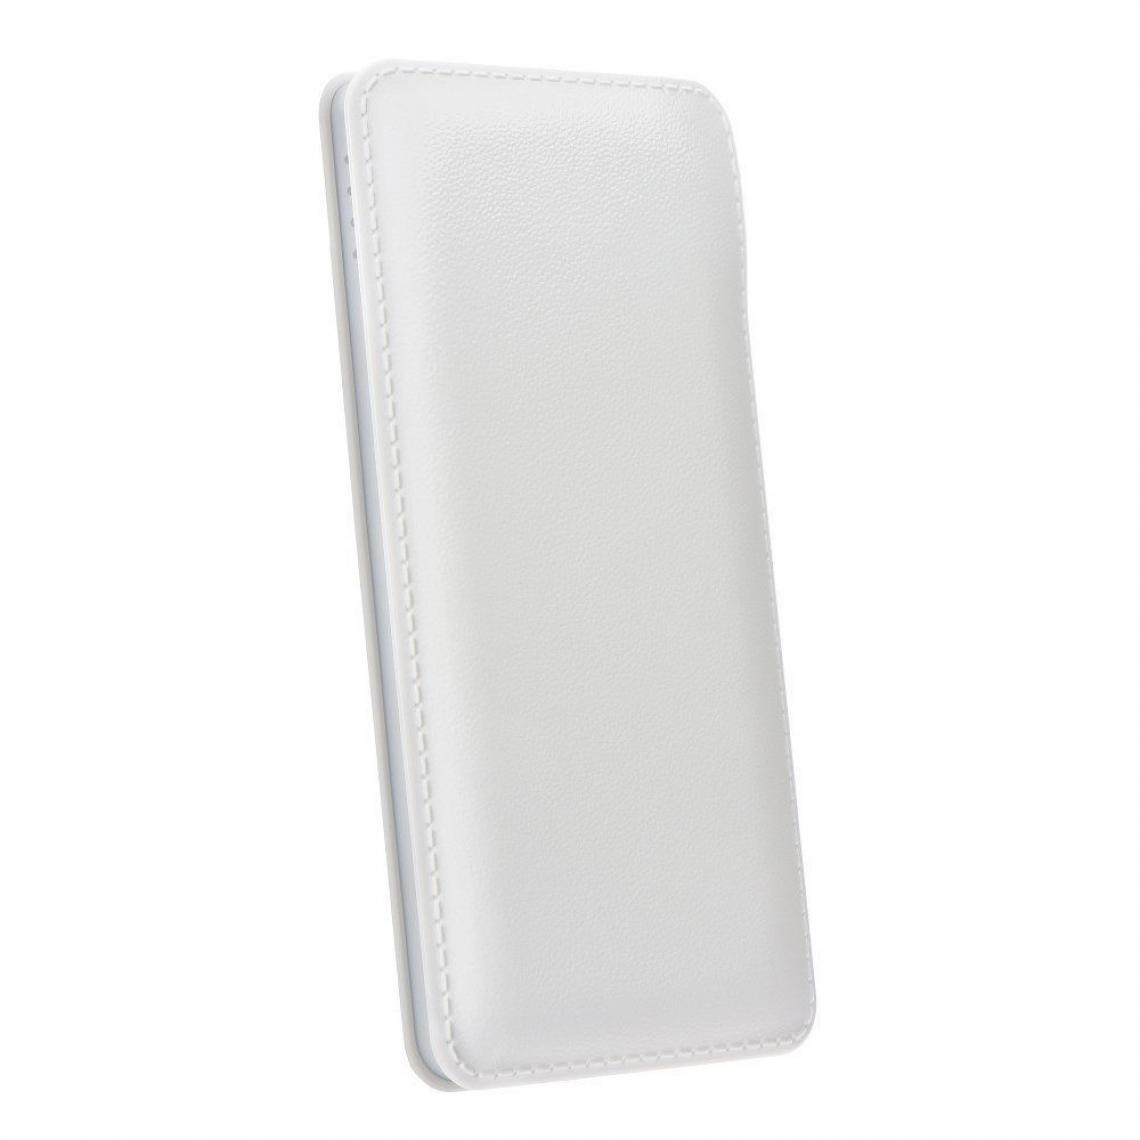 Ozzzo - Chargeur batterie externe 20000 mAh powerbank ozzzo blanc pour LG K22 - Autres accessoires smartphone